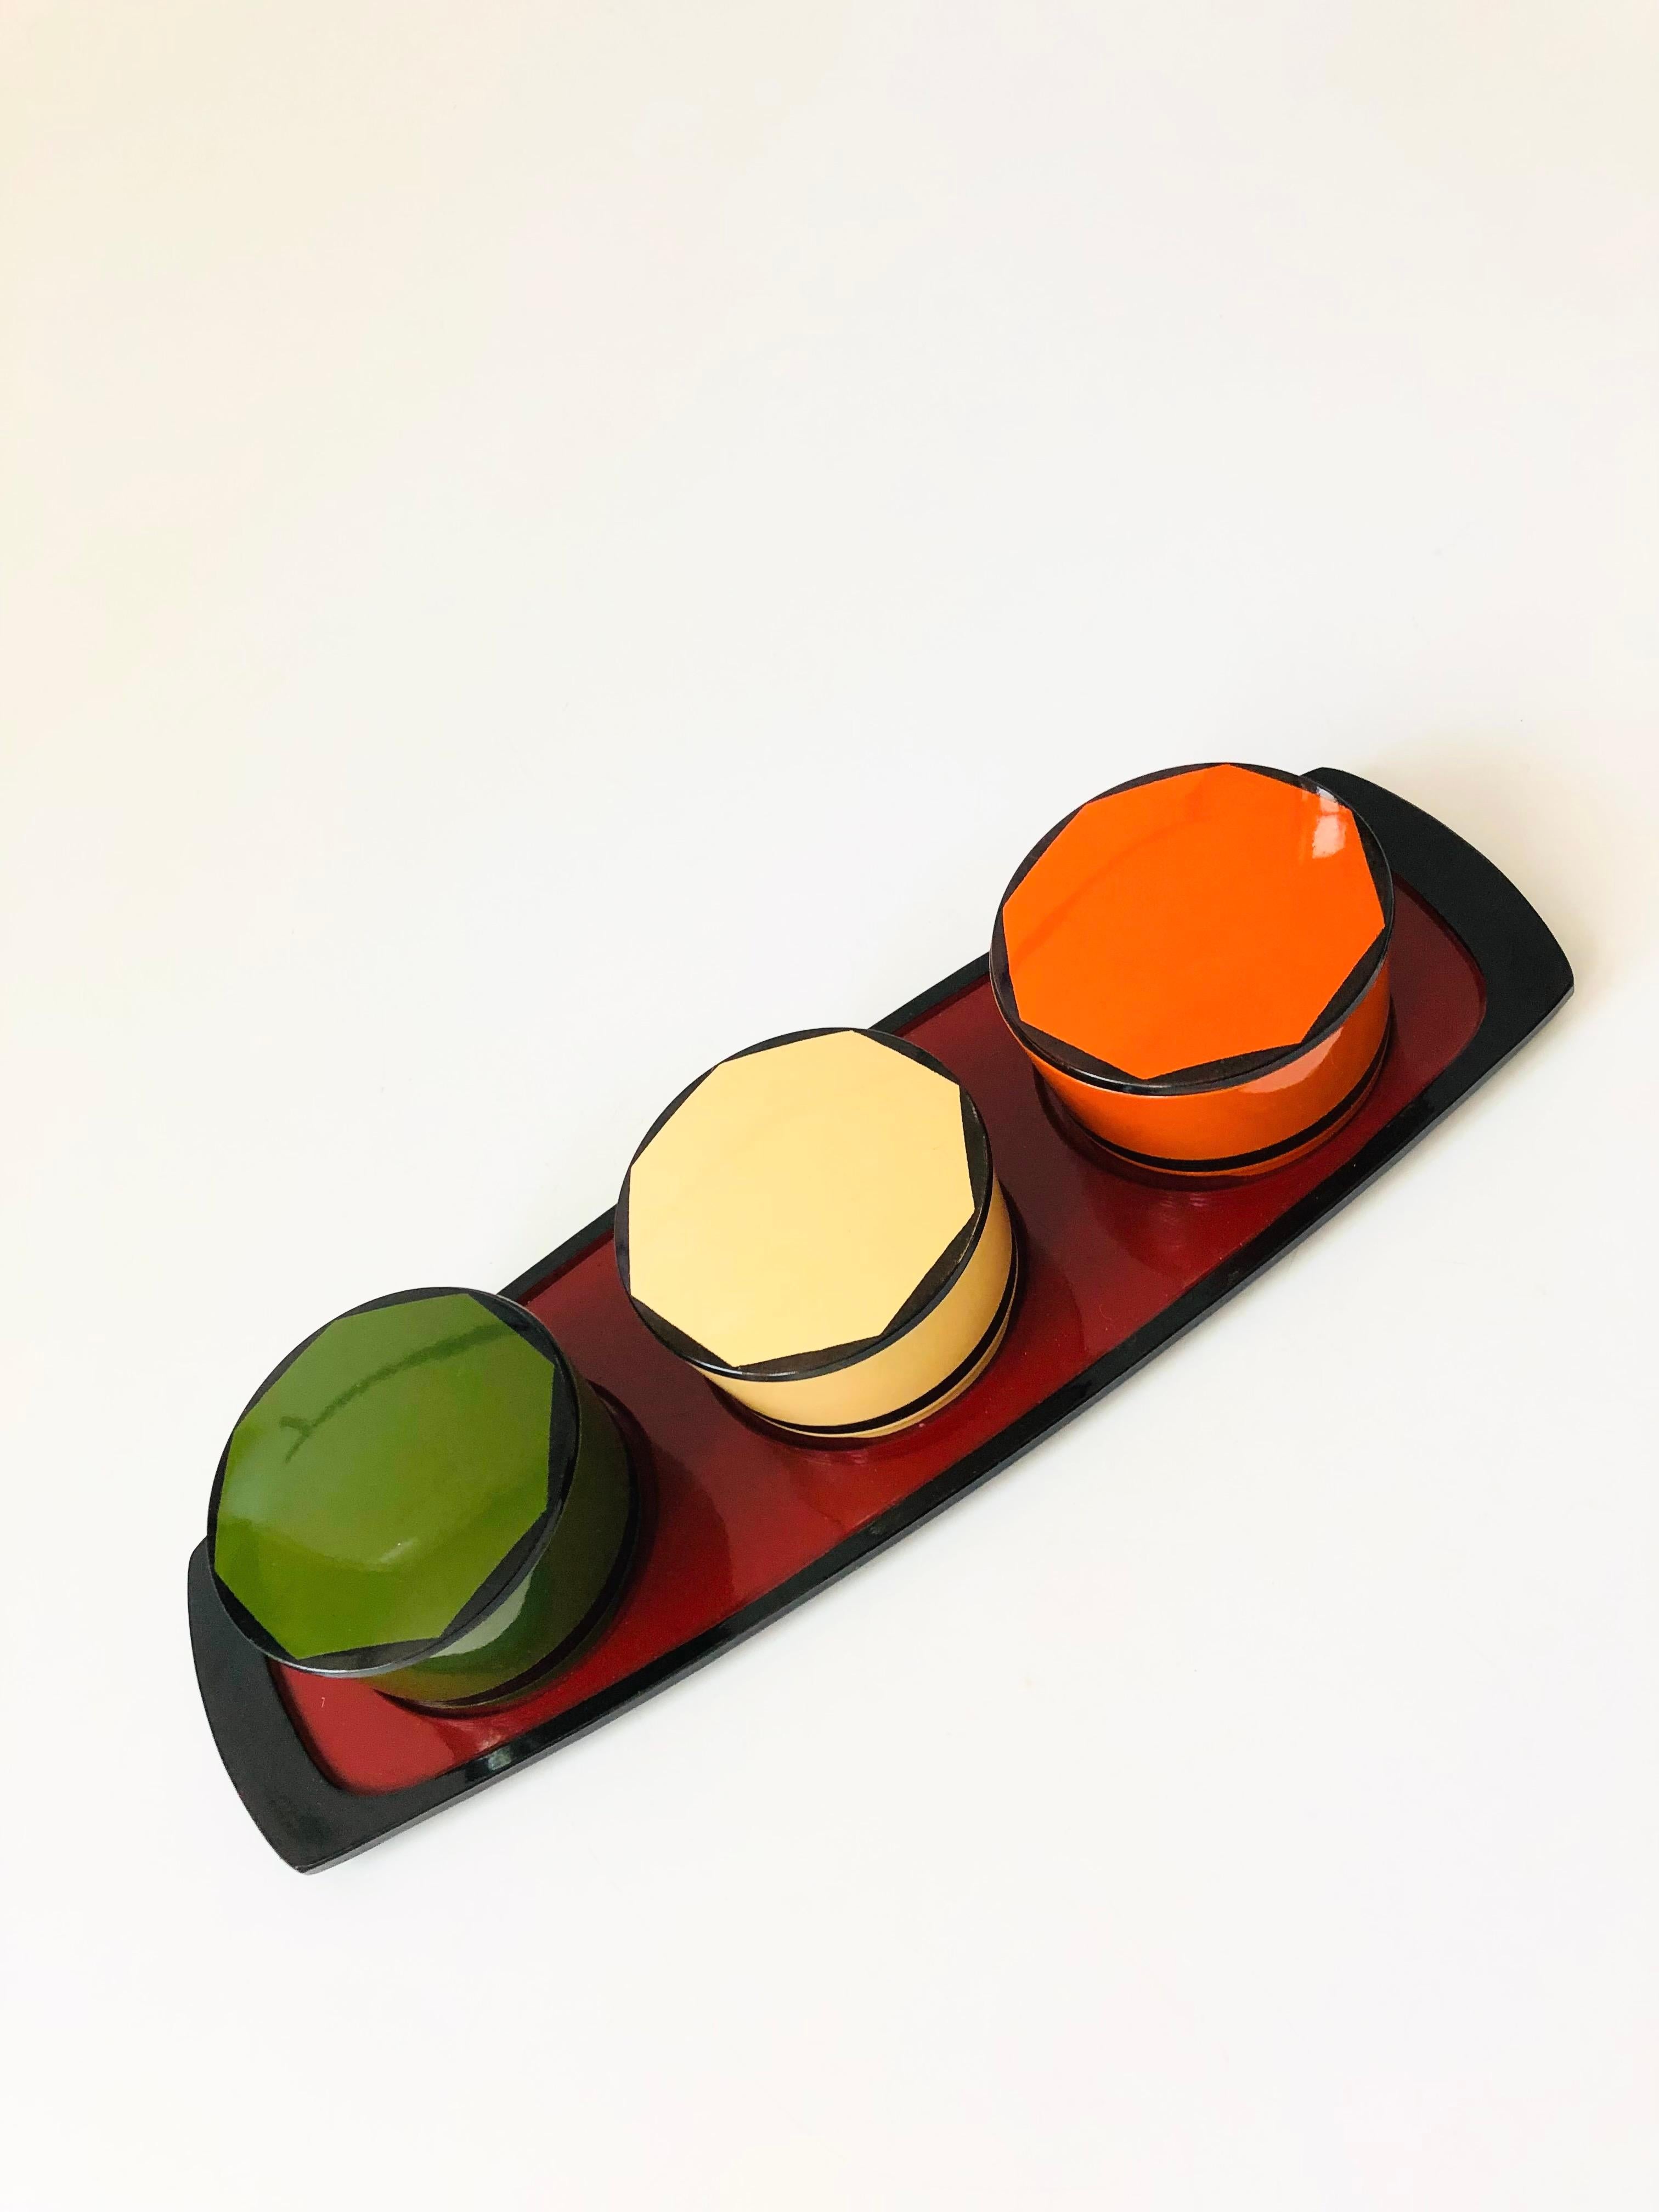 Un ensemble de 3 boîtes colorées en laque japonaise vintage sur un plateau assorti. Idéal pour organiser le bureau ou pour servir de petits plats.
Mesure 14.25 